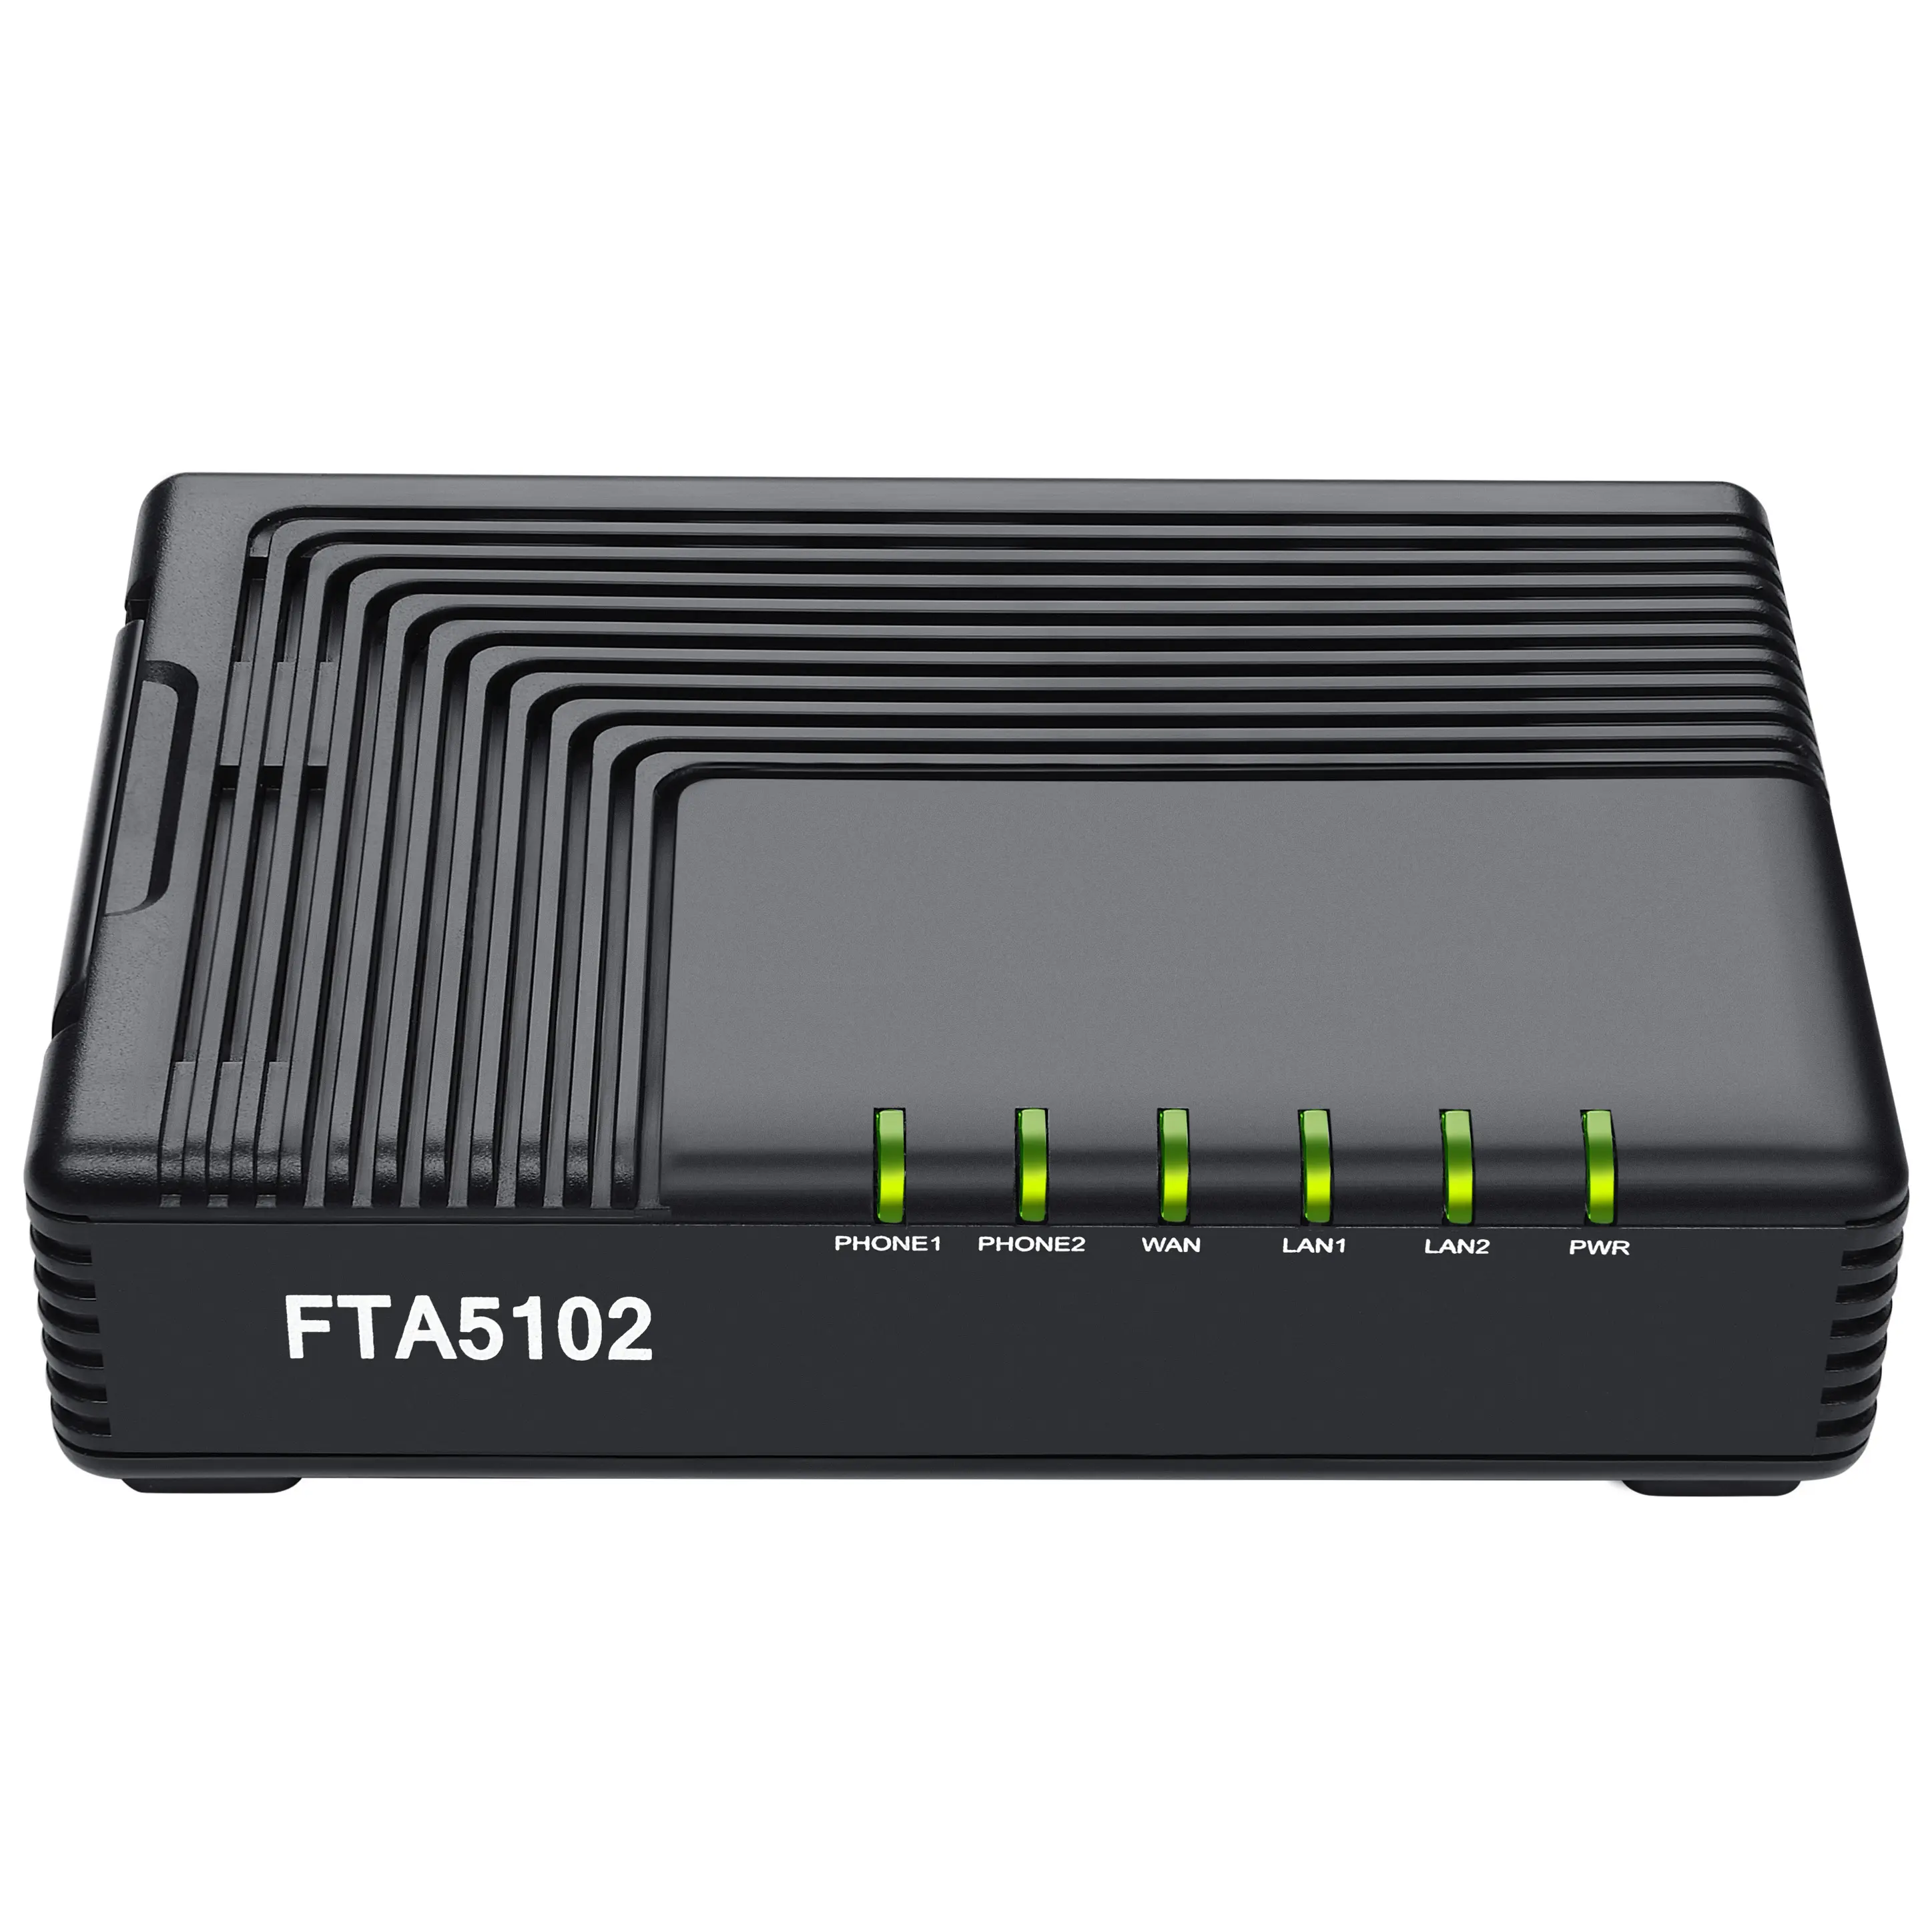 FTA5102、Flyingvoice VoIP電話アダプター (ATA) は3*10/100M RJ45ポート (1 WAN、2 LAN) をサポート